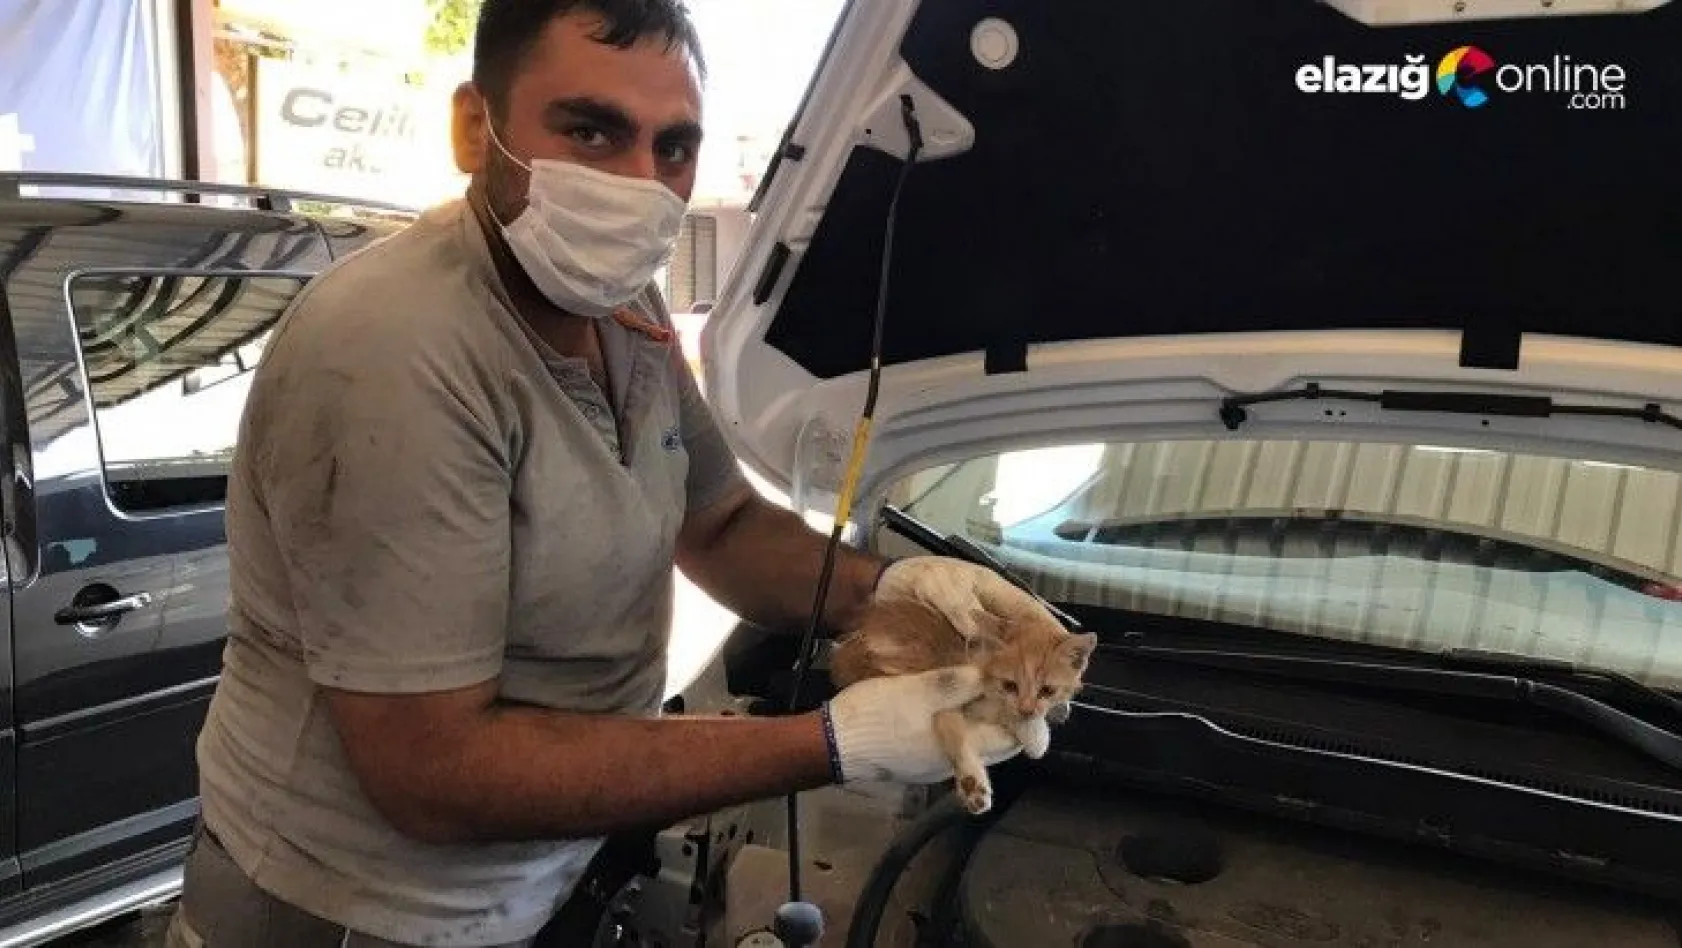 Elazığ'da aracın far kısmına girip sıkışan yavru kedi kurtarıldı